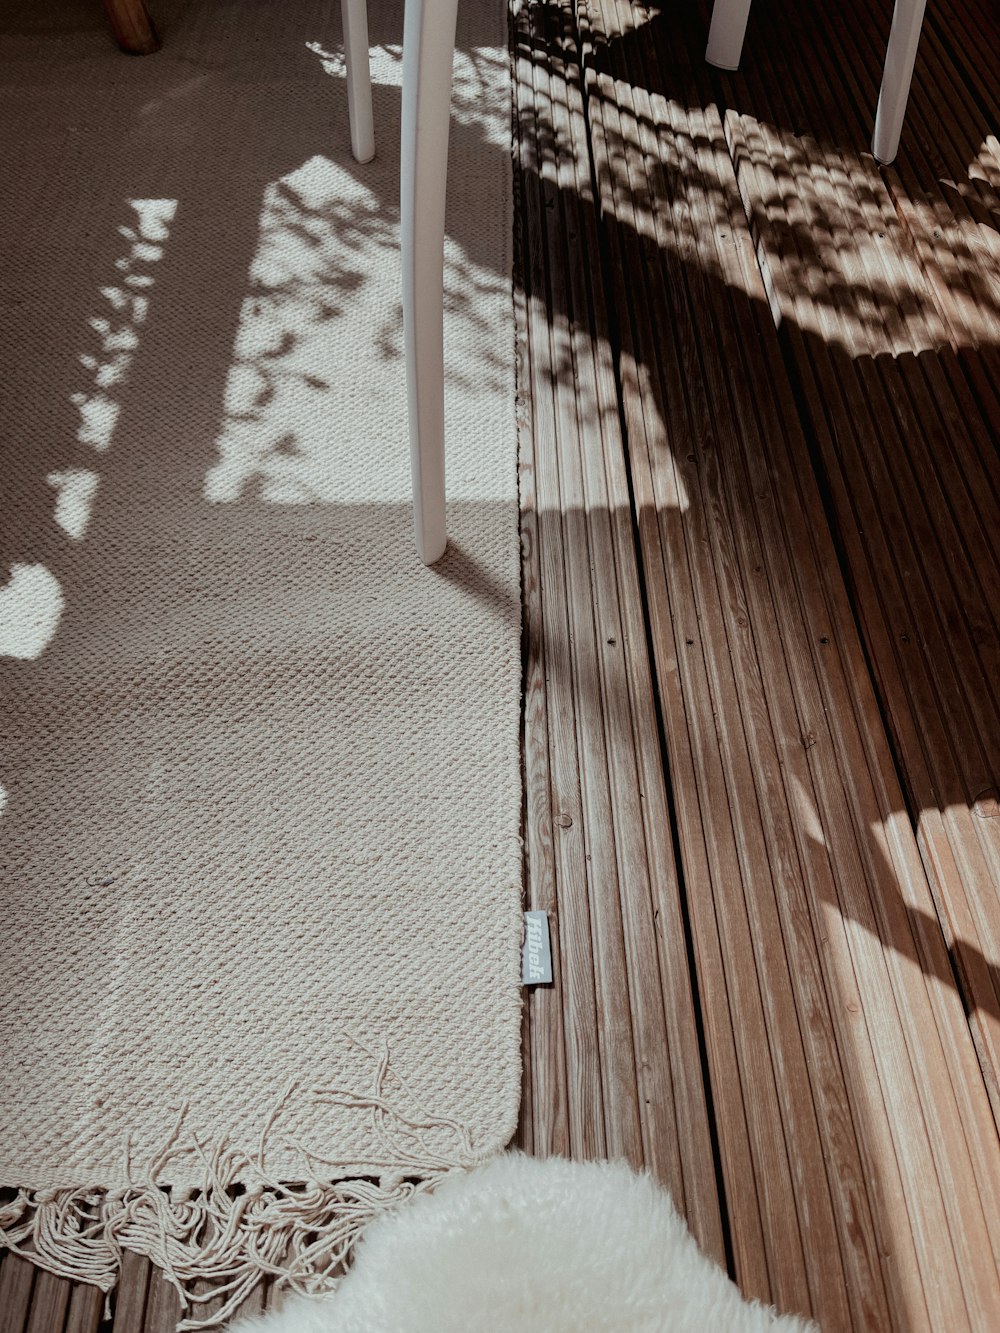 Schatten der Person auf Holzboden